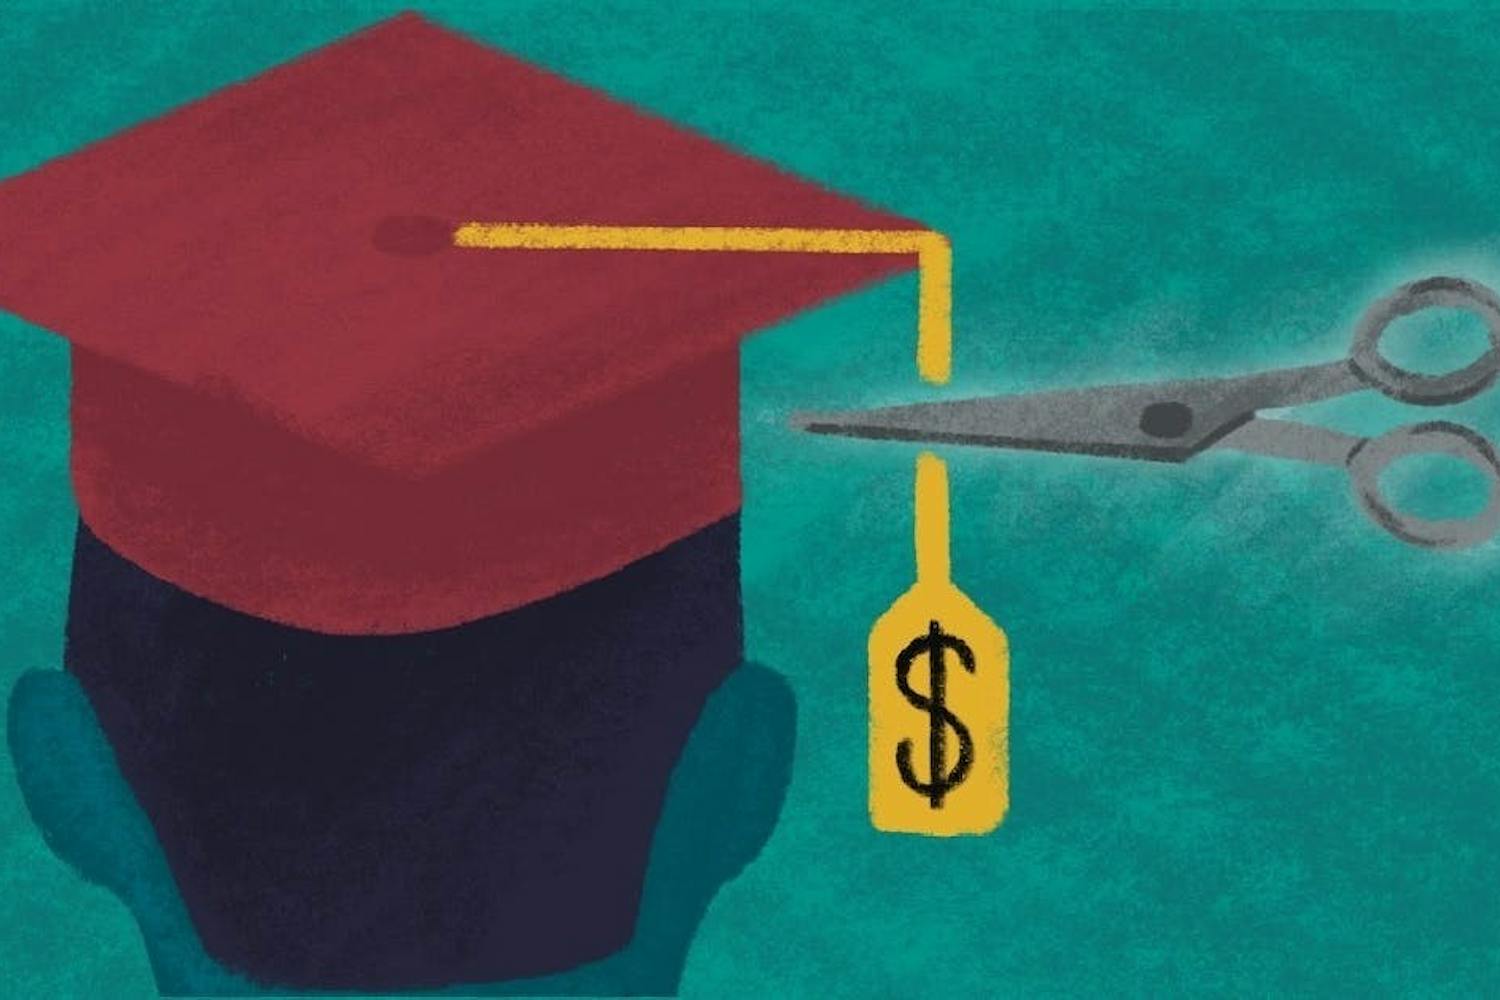 Ilustración de un gorro de graduación con una etiqueta de precio cortada con tijeras.